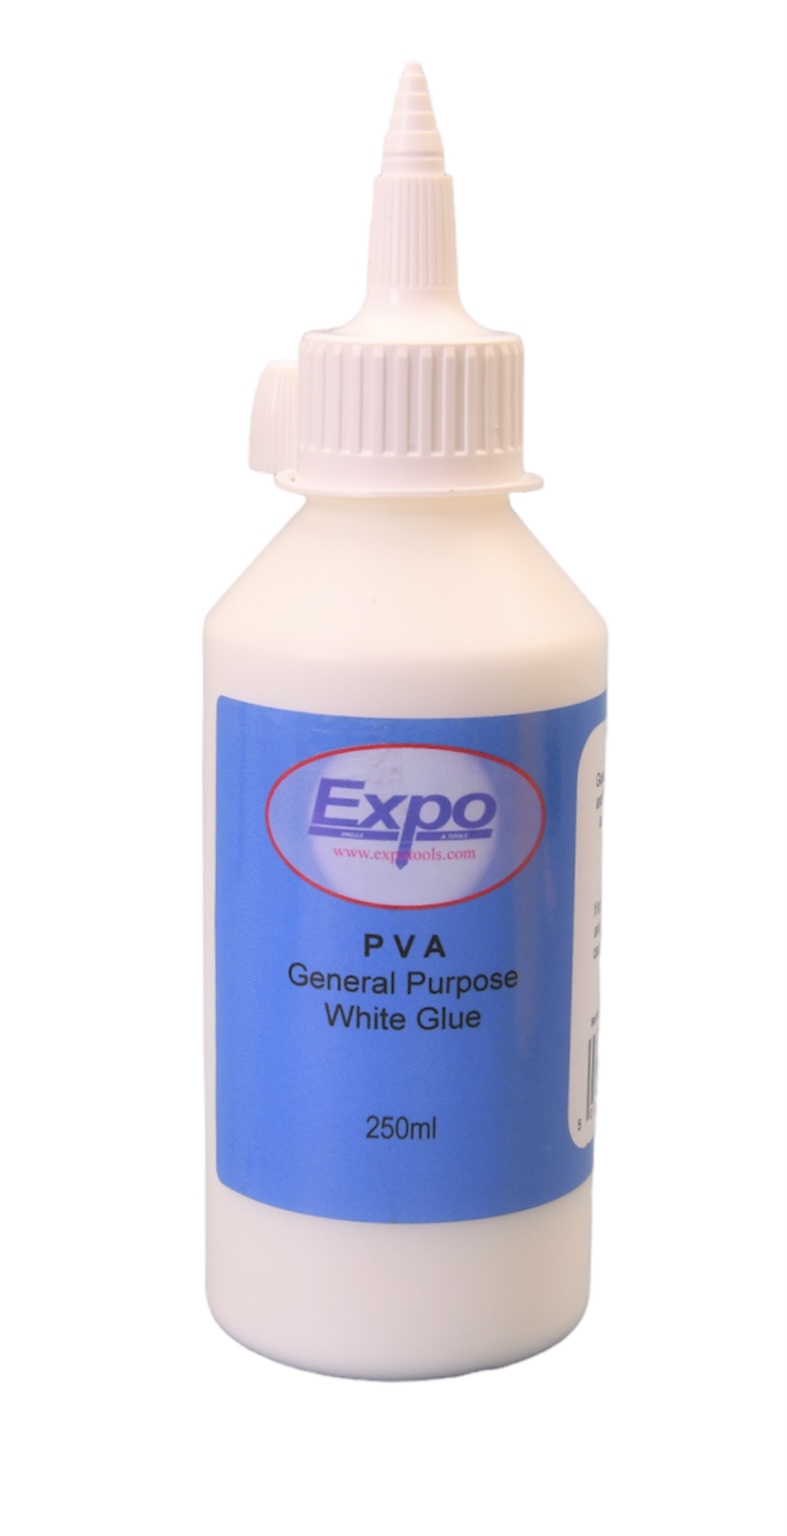 47030 250ml Expo PVA General Purpose White Glue